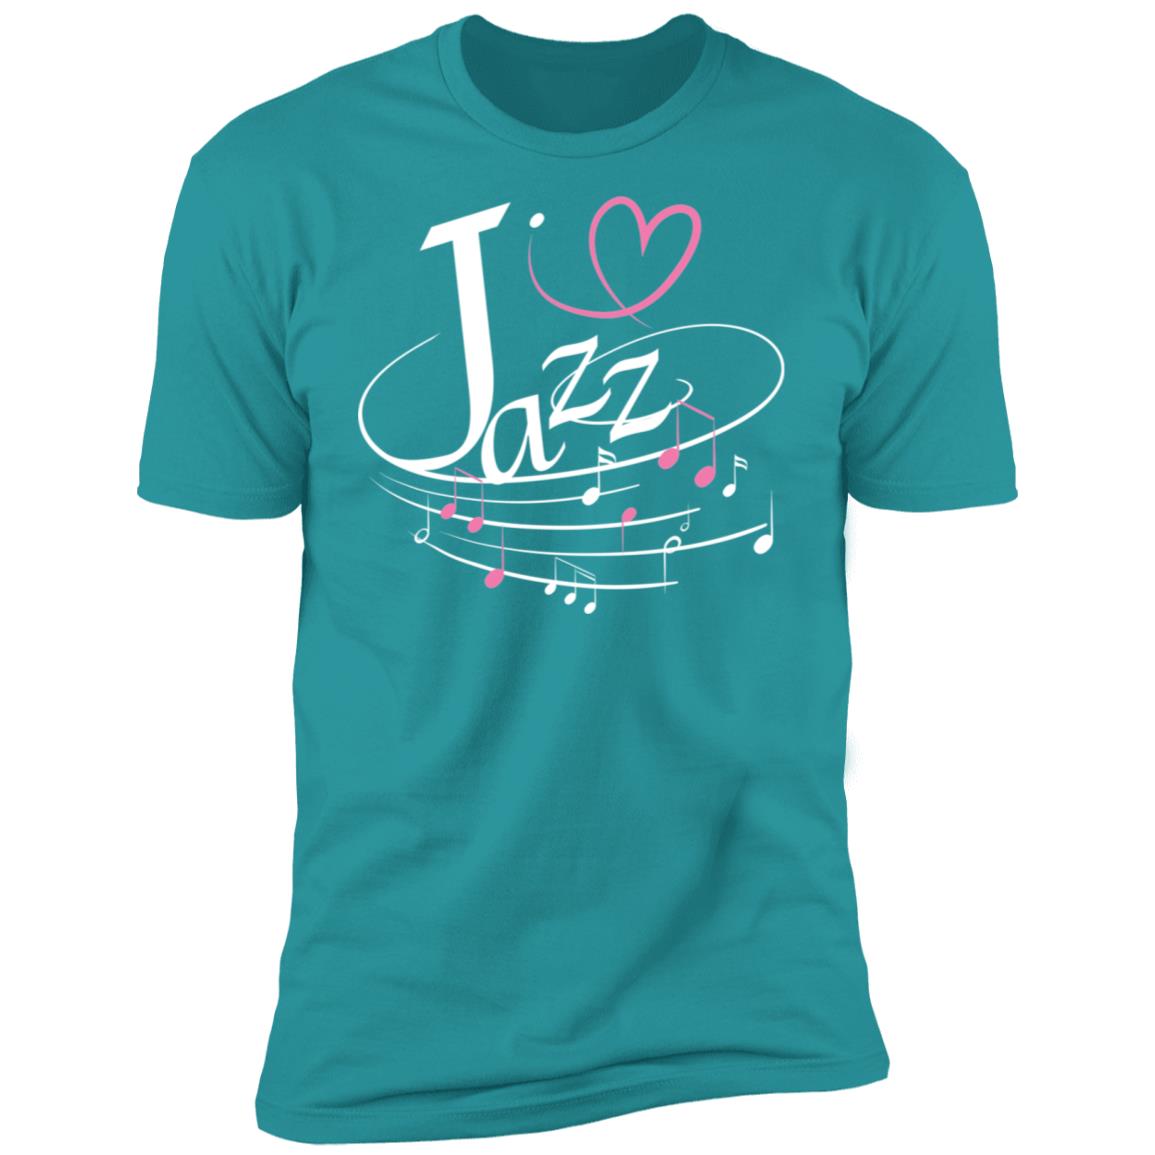 I Love Jazz Premium Short Sleeve T-Shirt